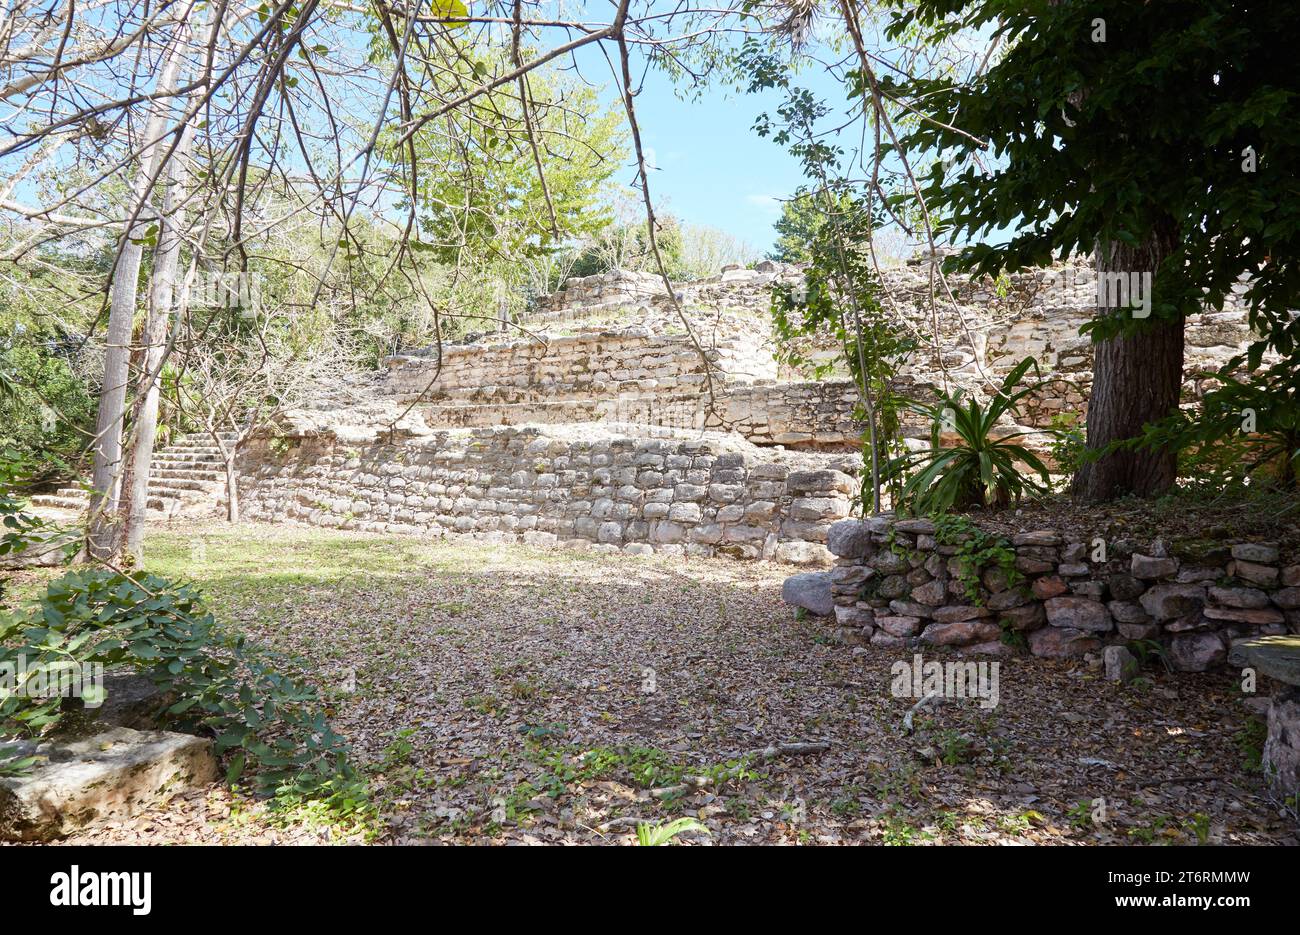 The El Conejo ruins in Izamal, Yucatan, Mexico Stock Photo